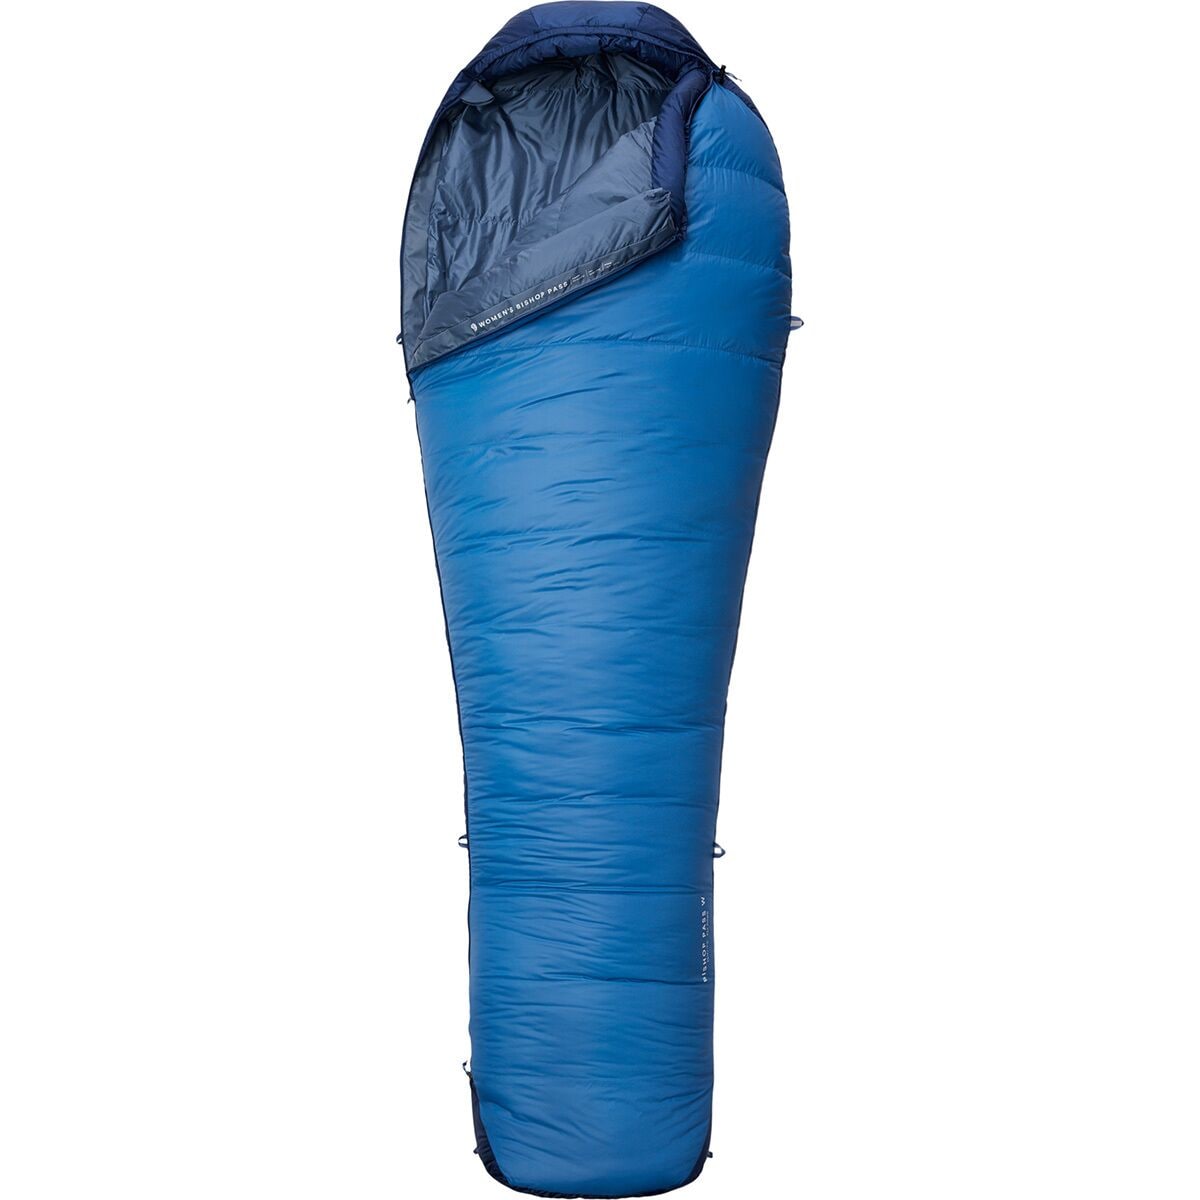 Mountain Hardwear Bishop Pass Sleeping Bag: 30F Down - Women's